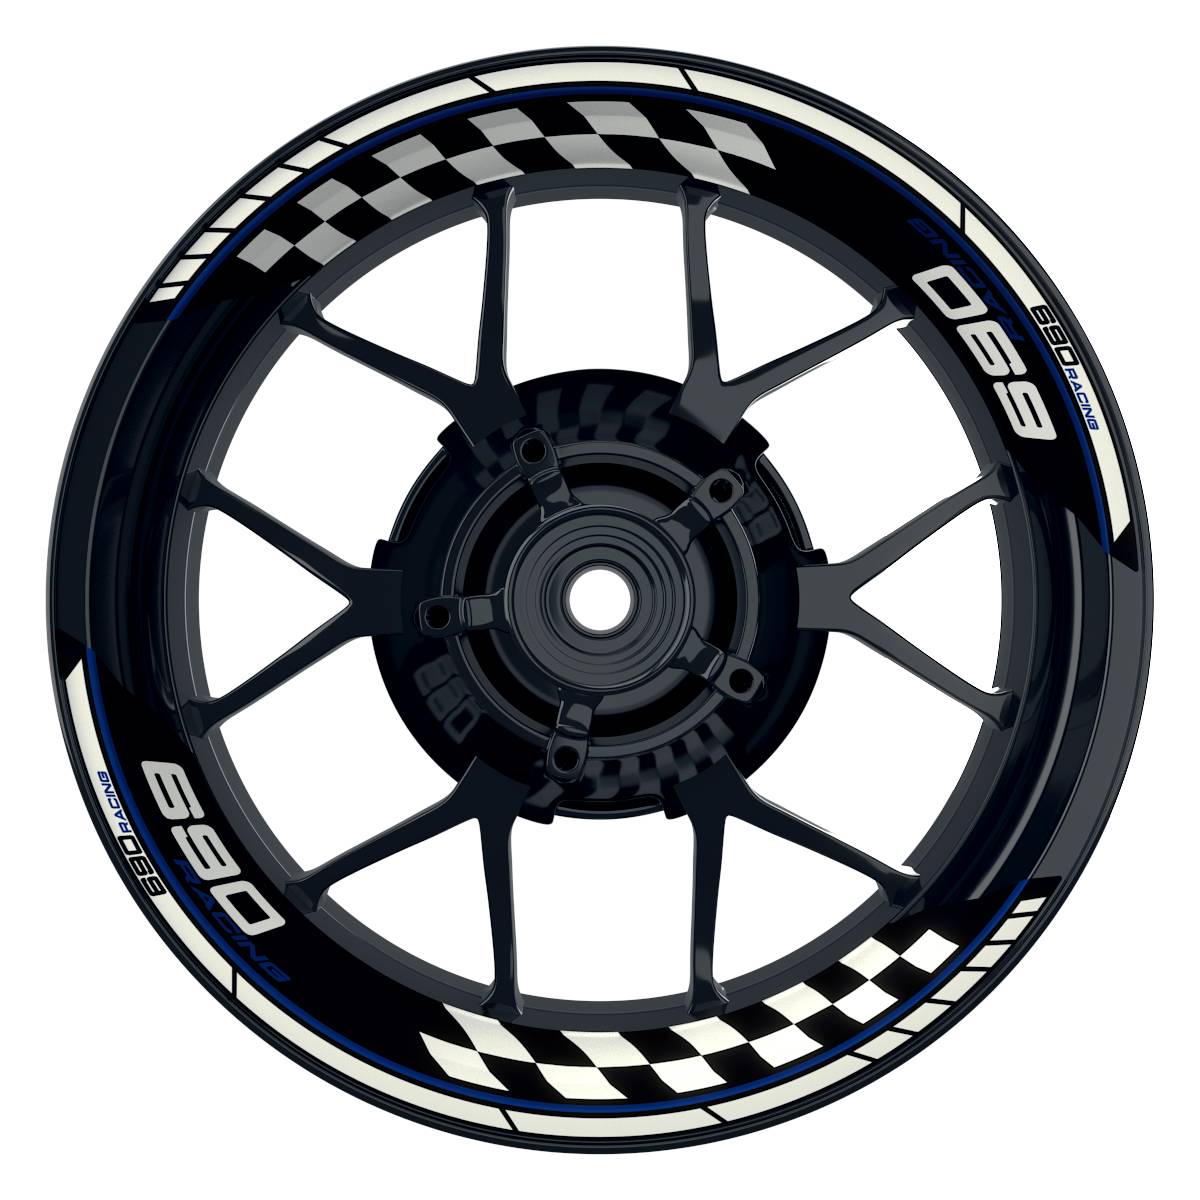 KTM Racing 690 Grid schwarz blau Frontansicht